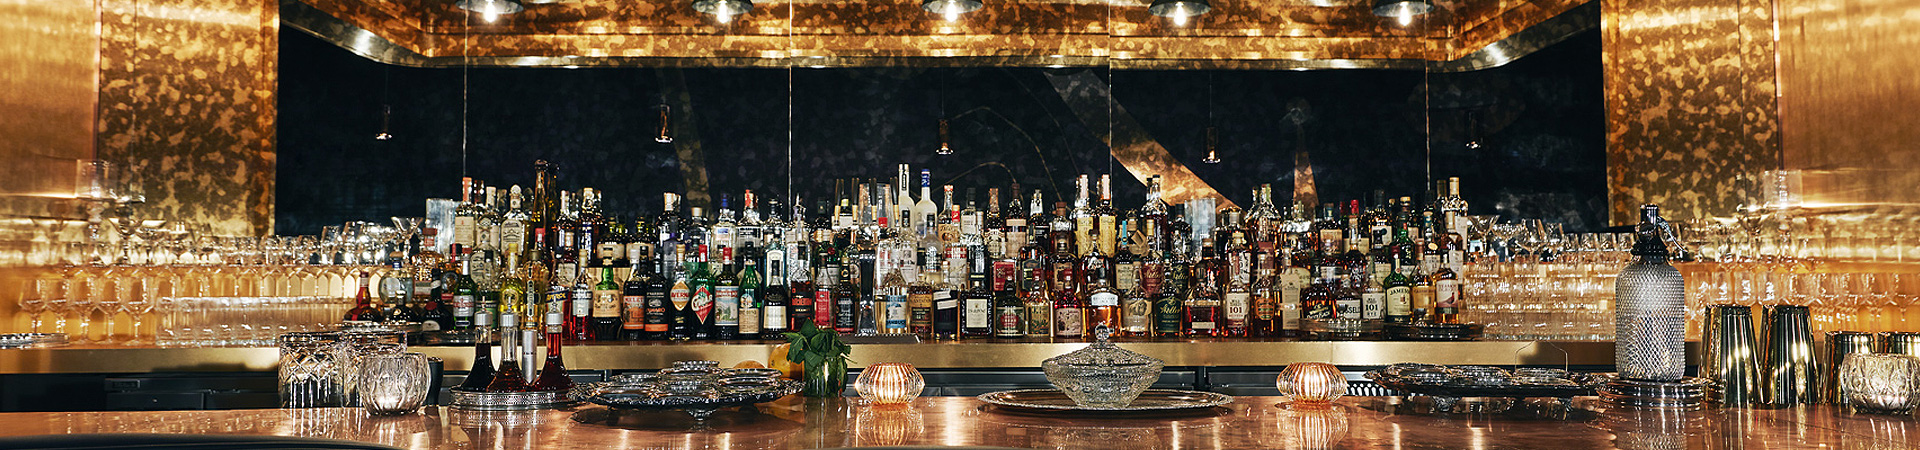 liquor collection behind a bar